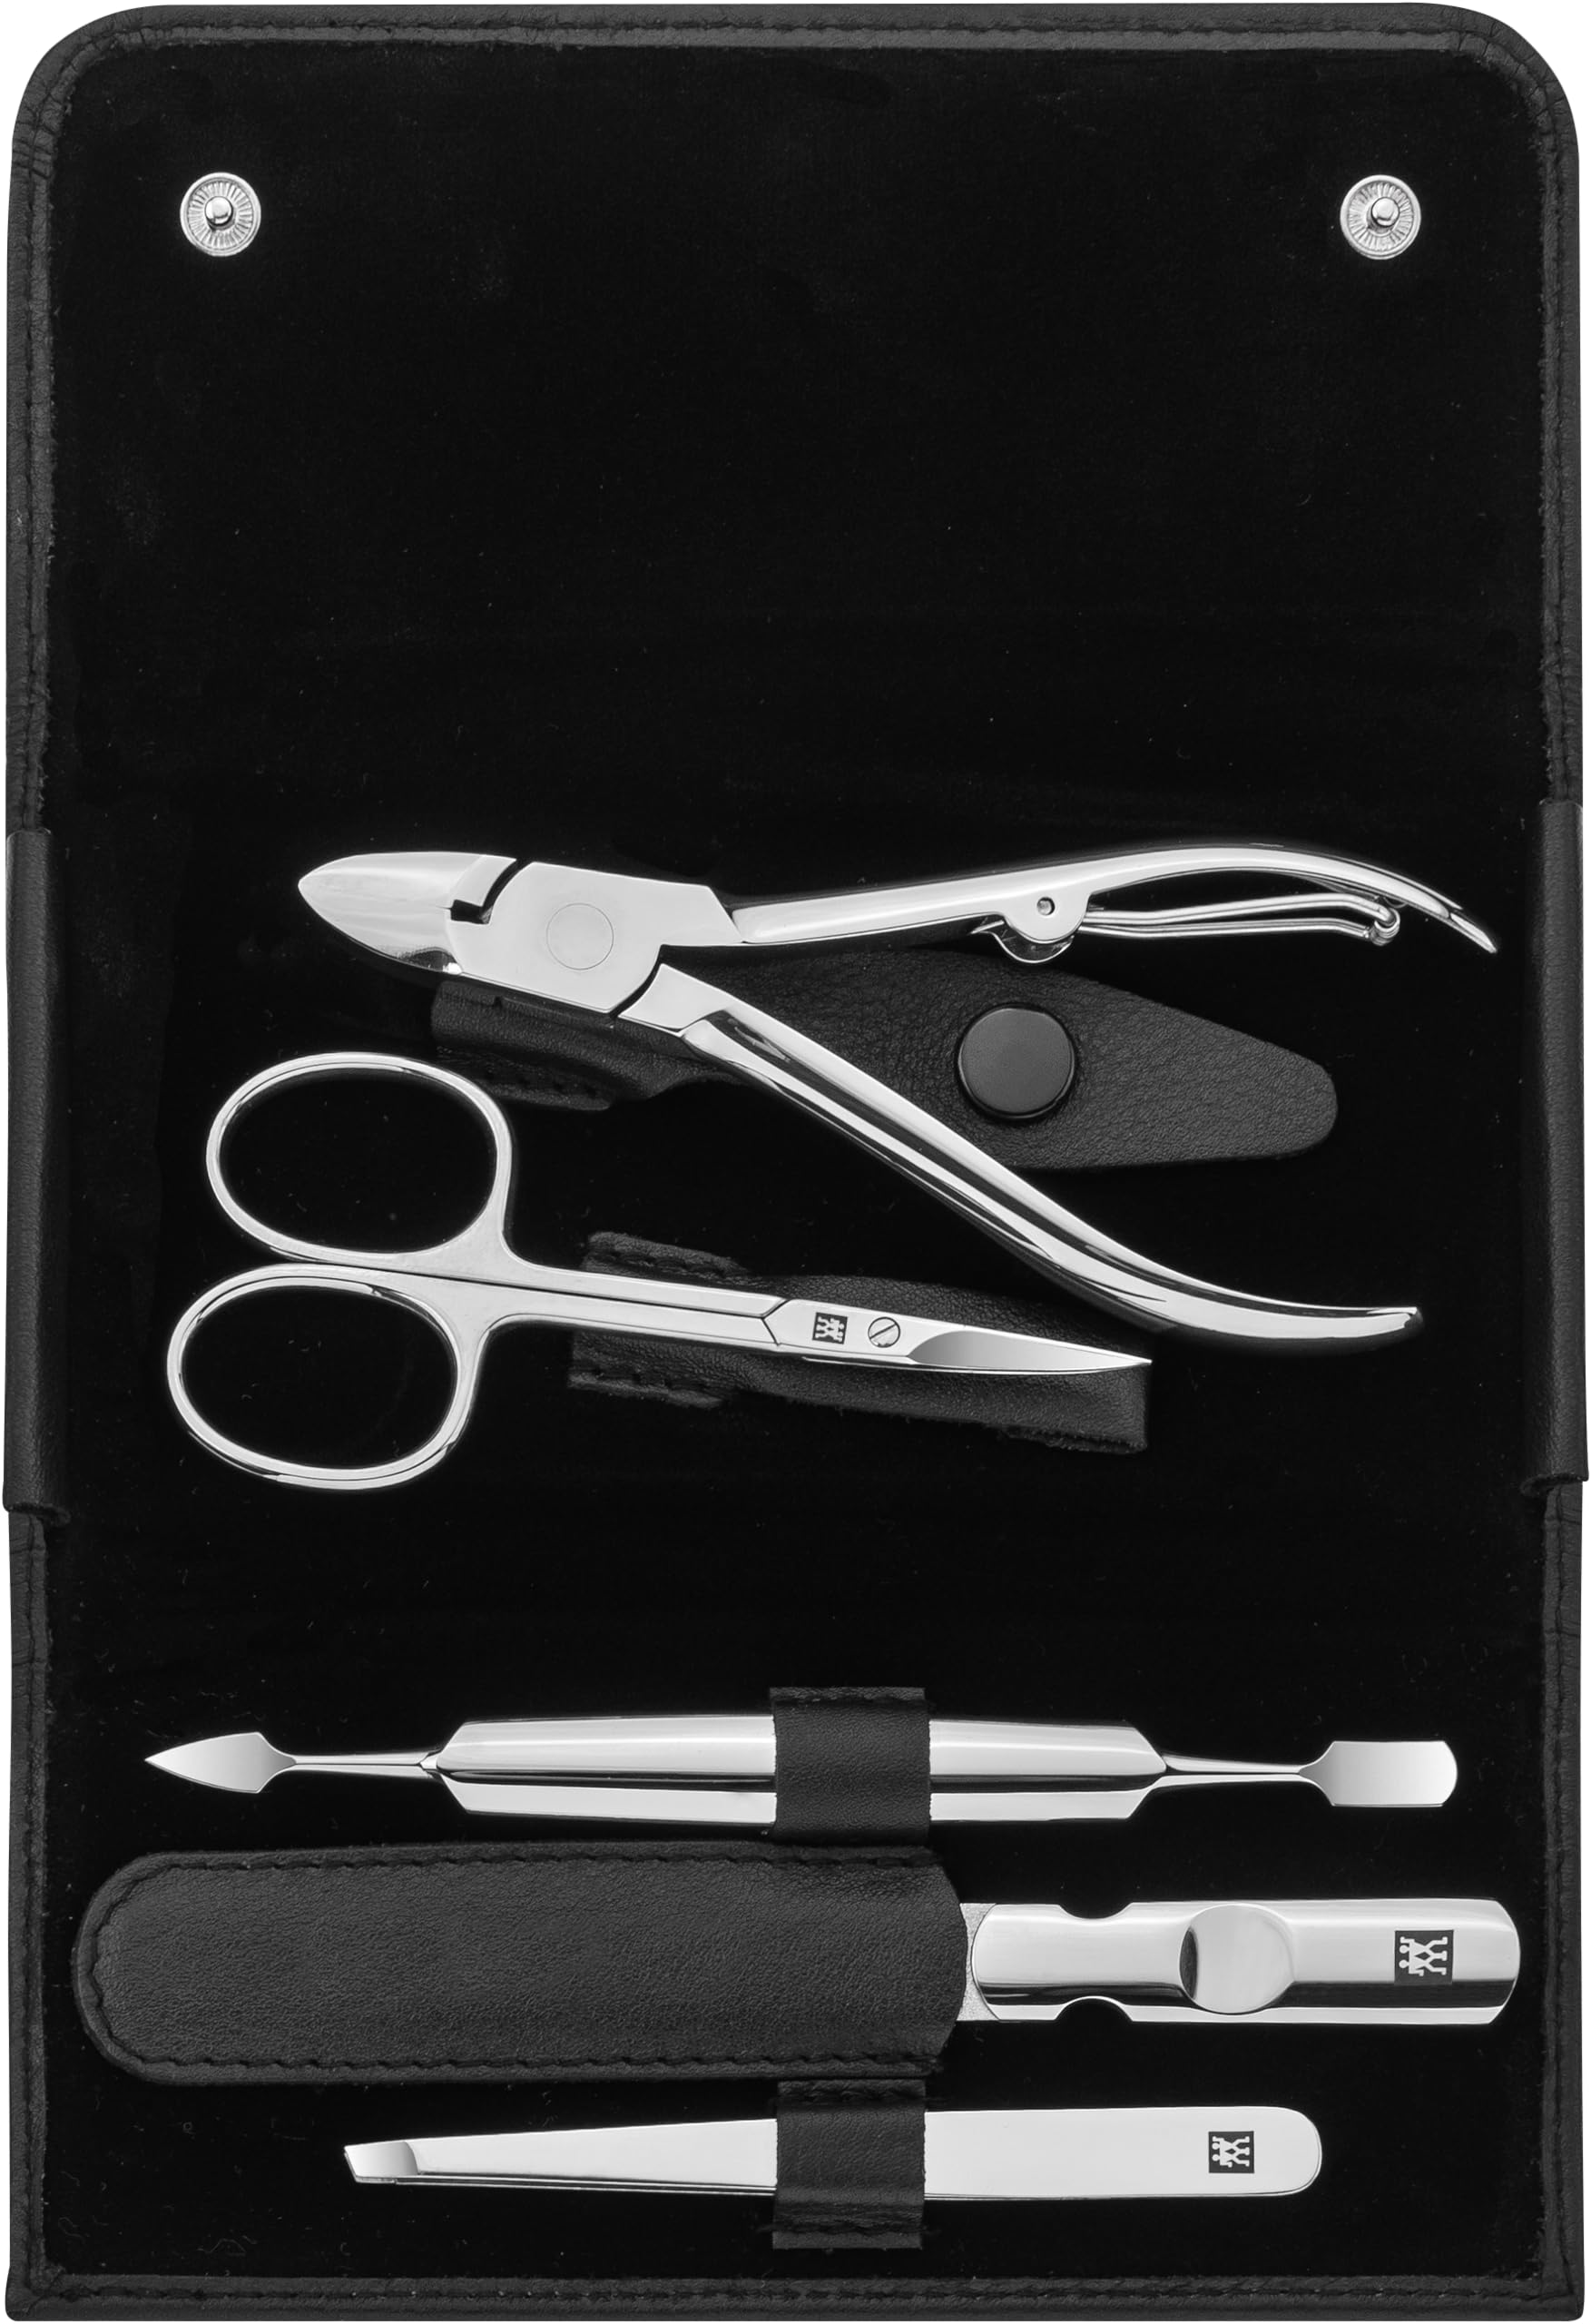 ZWILLING Maniküreset 5-teilig für Nagelpflege und Pediküre aus Rindleder mit Druckknopf, Schwarz